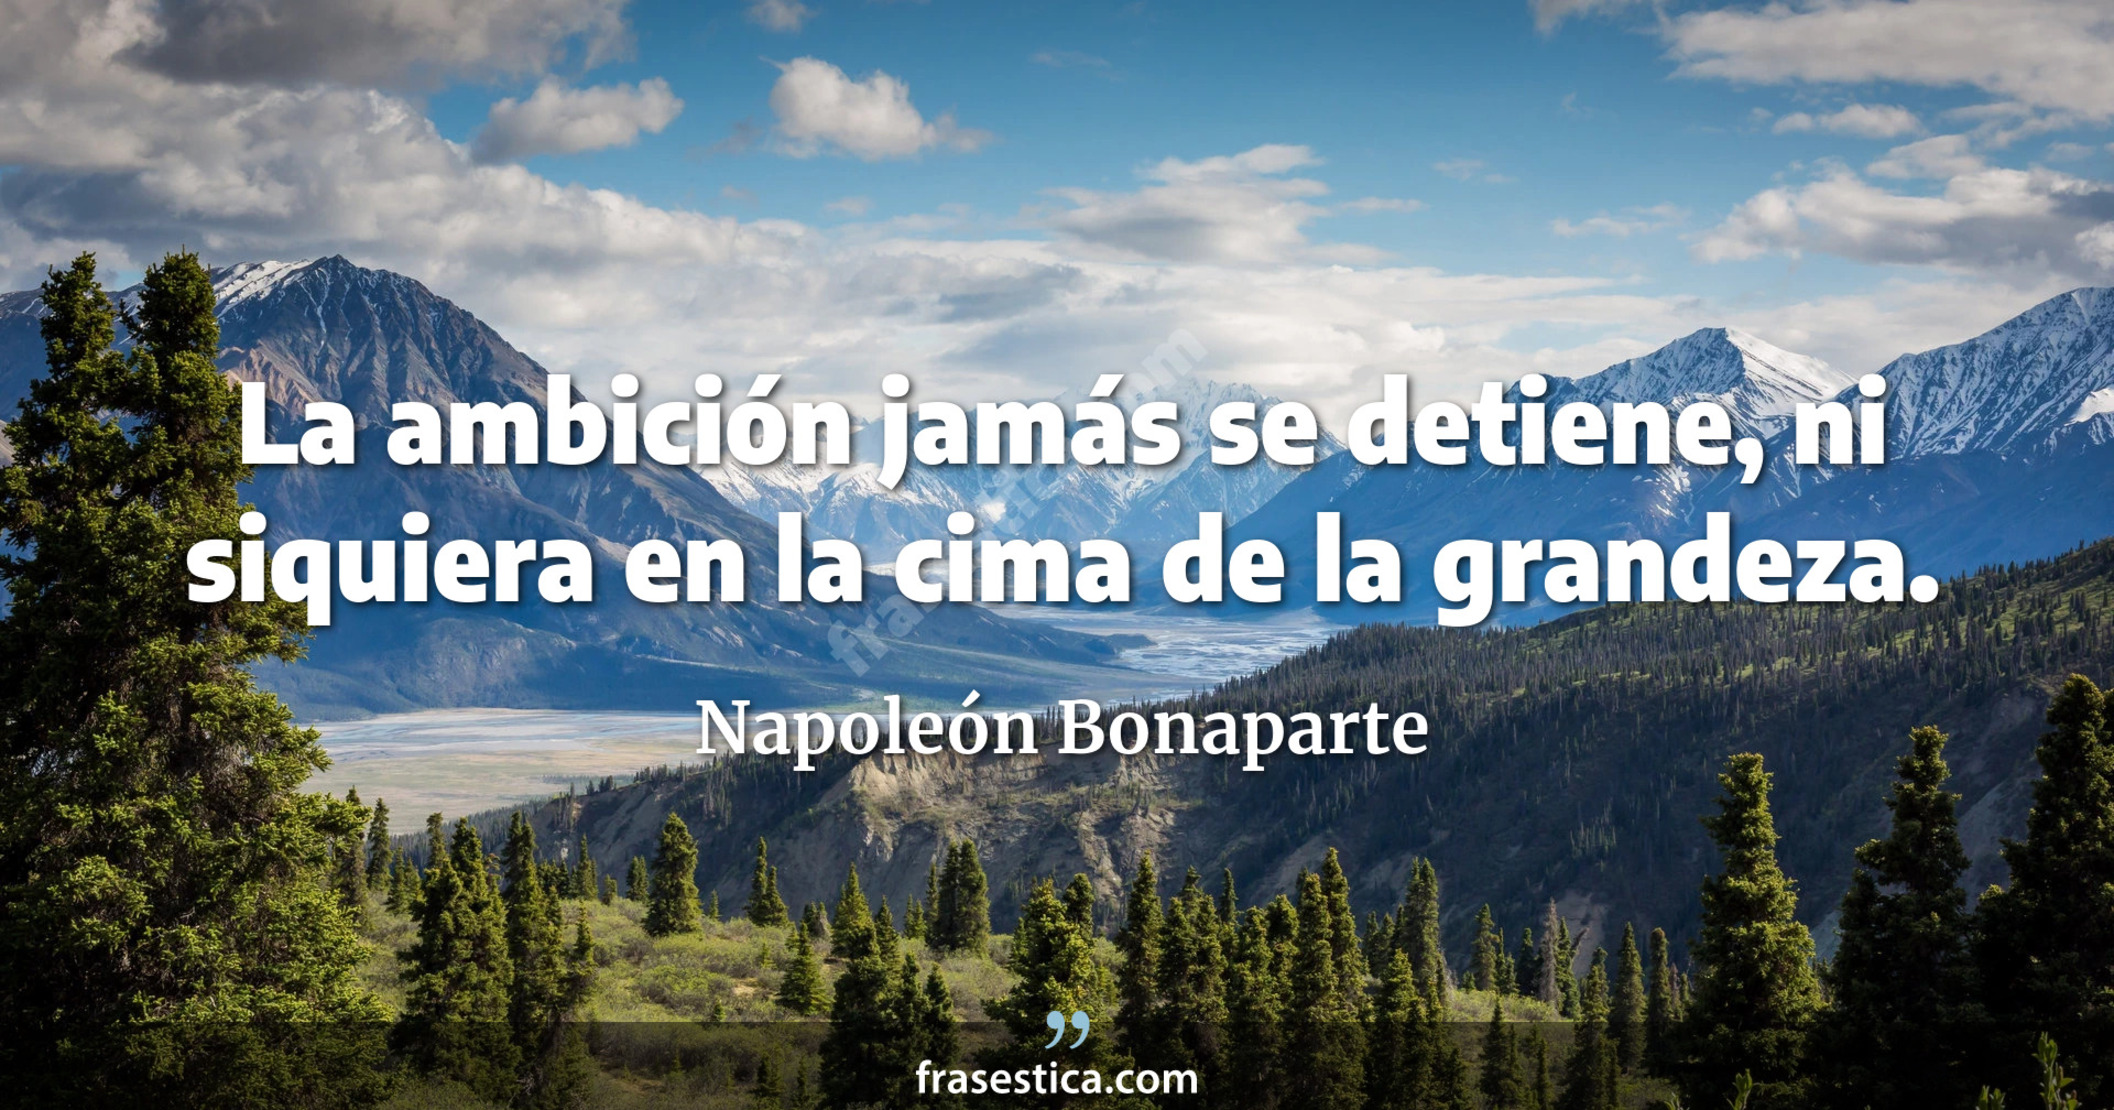 La ambición jamás se detiene, ni siquiera en la cima de la grandeza. - Napoleón Bonaparte